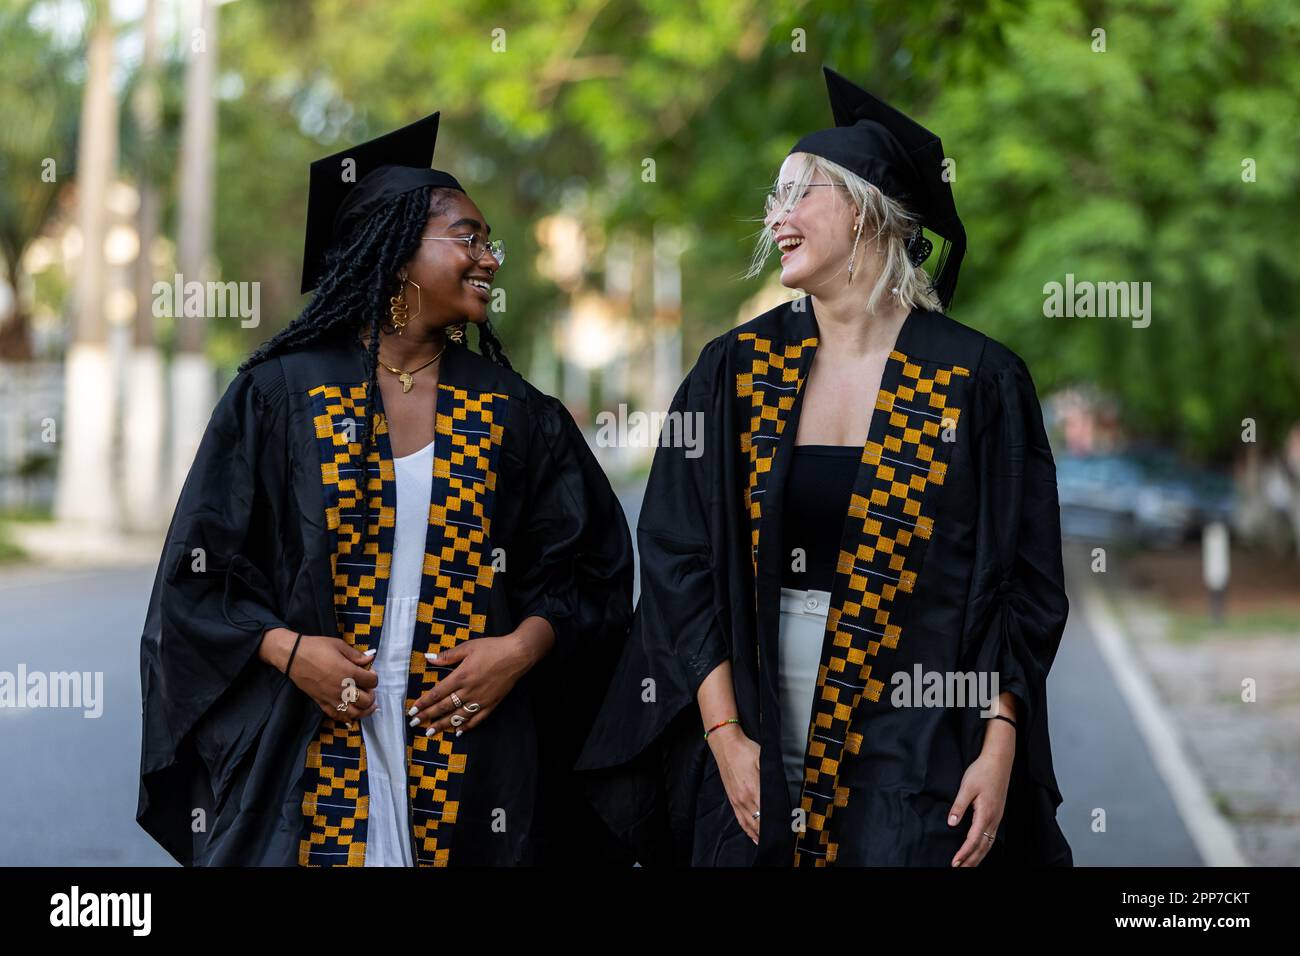 Multiethnische, schwarze und kaukasische weibliche Universitätsabsolventen tragen Kittel und Mützen und teilen auf dem Weg zur Abschlussfeier einen Witz. Stockfoto